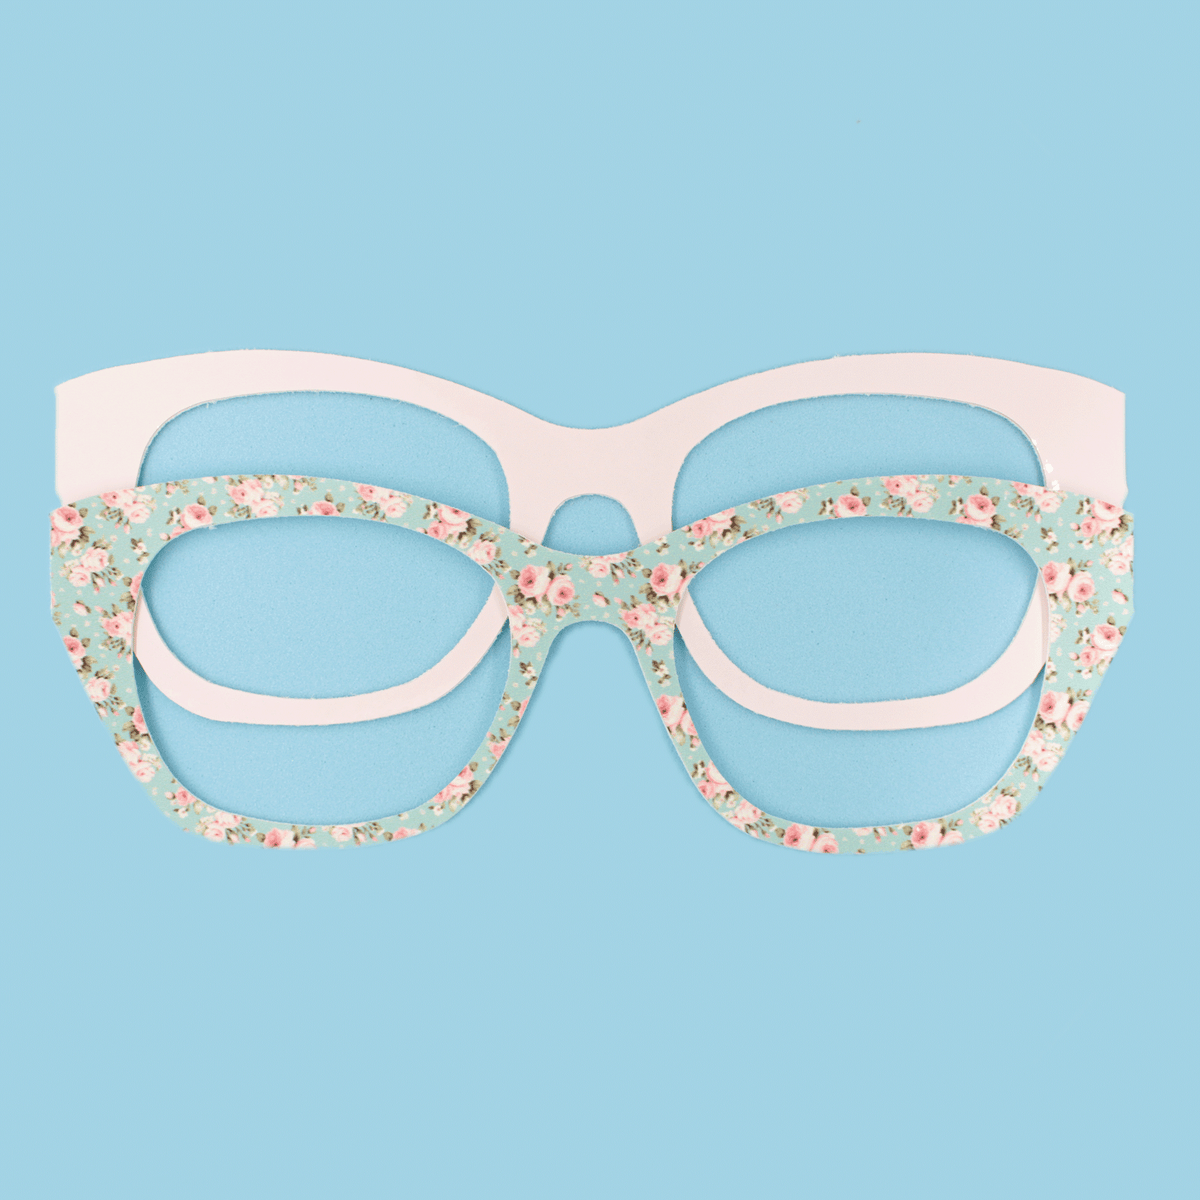 Weslyn Sunglasses + Two Eyewear Stickers